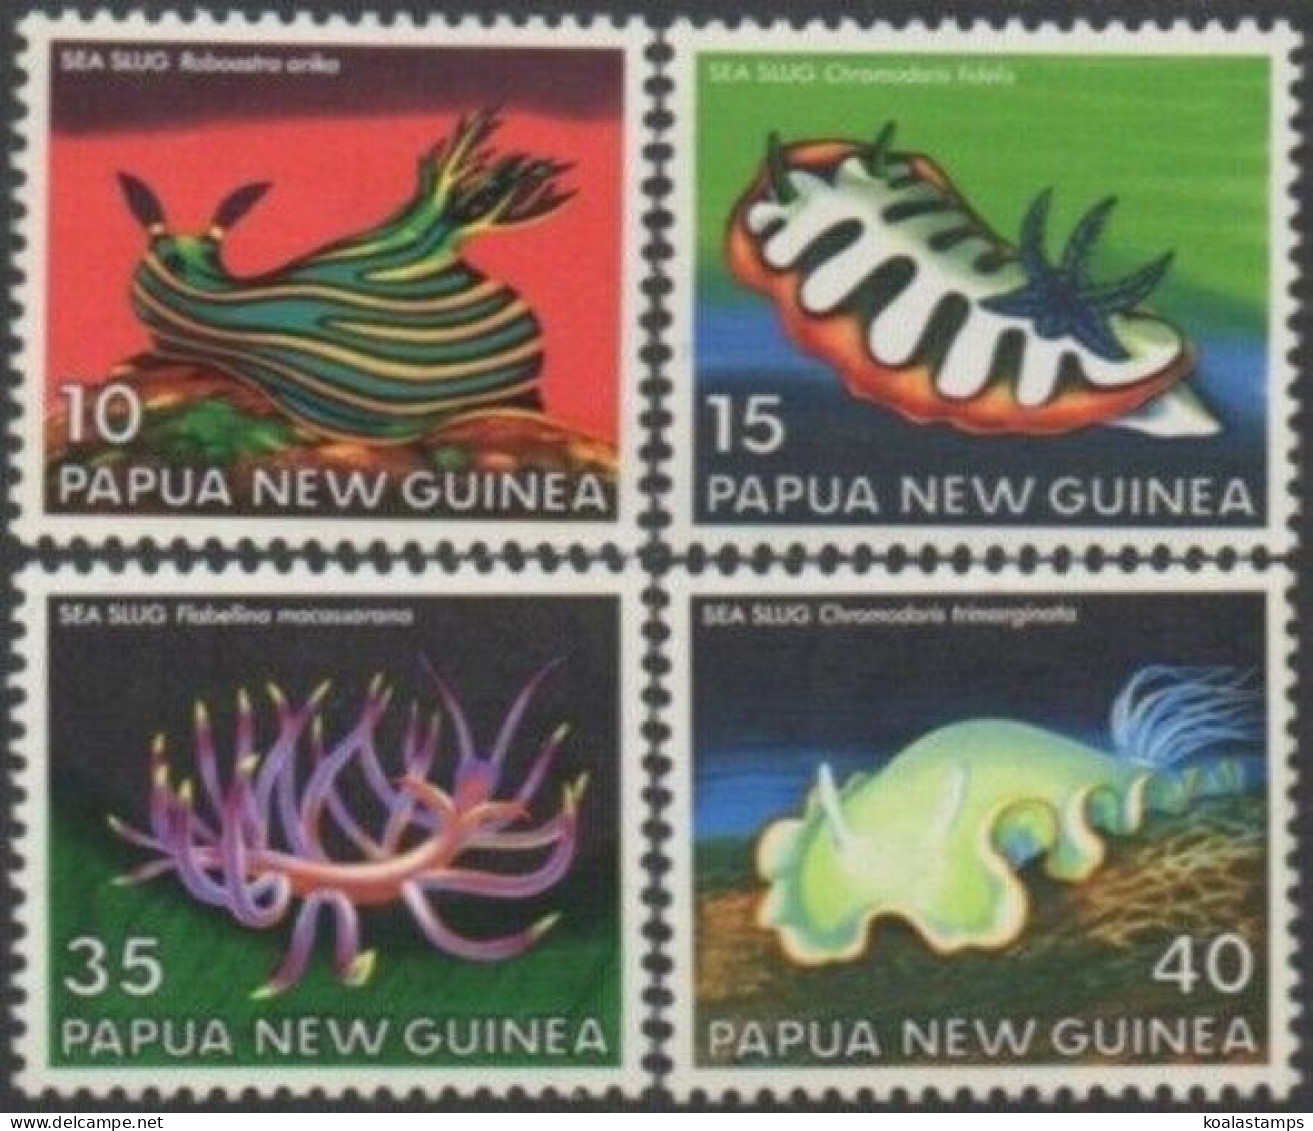 Papua New Guinea 1978 SG350-353 Sea Slugs Set MNH - Papua New Guinea